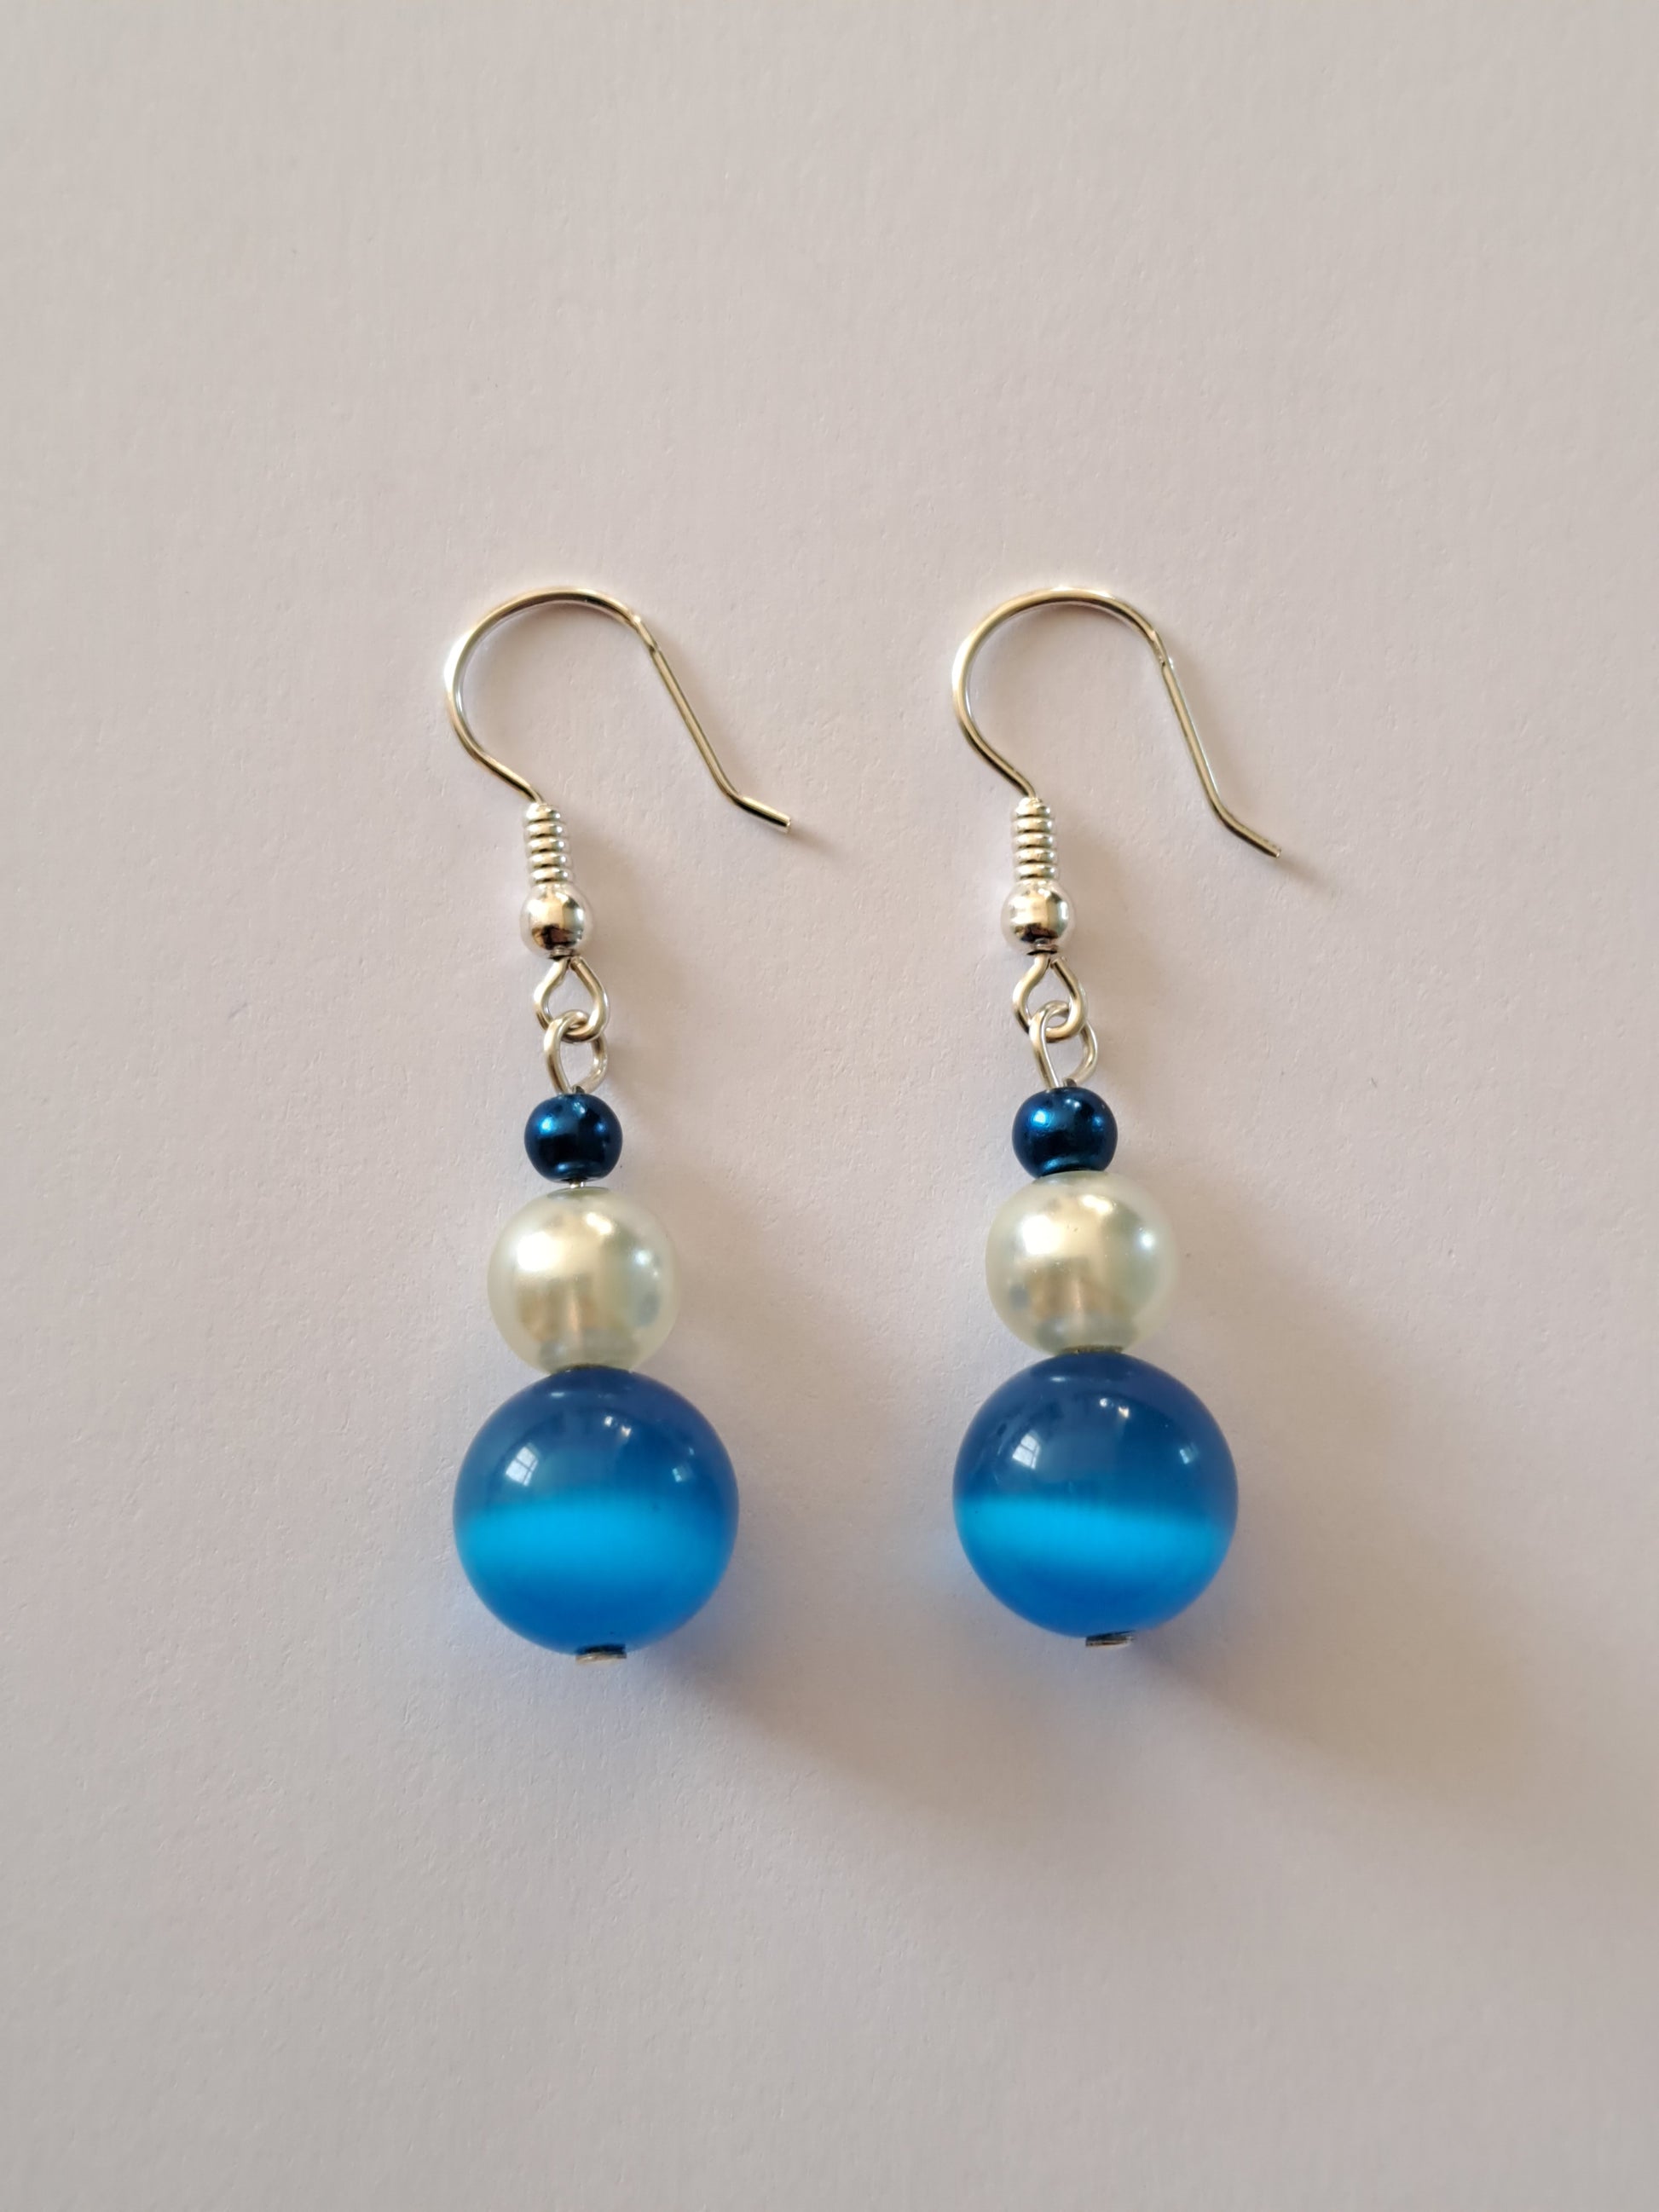 Boucles d'oreilles en argent avec perles nacrées blanches et oeil de chat bleue. Site de bijoux en ligne. France.